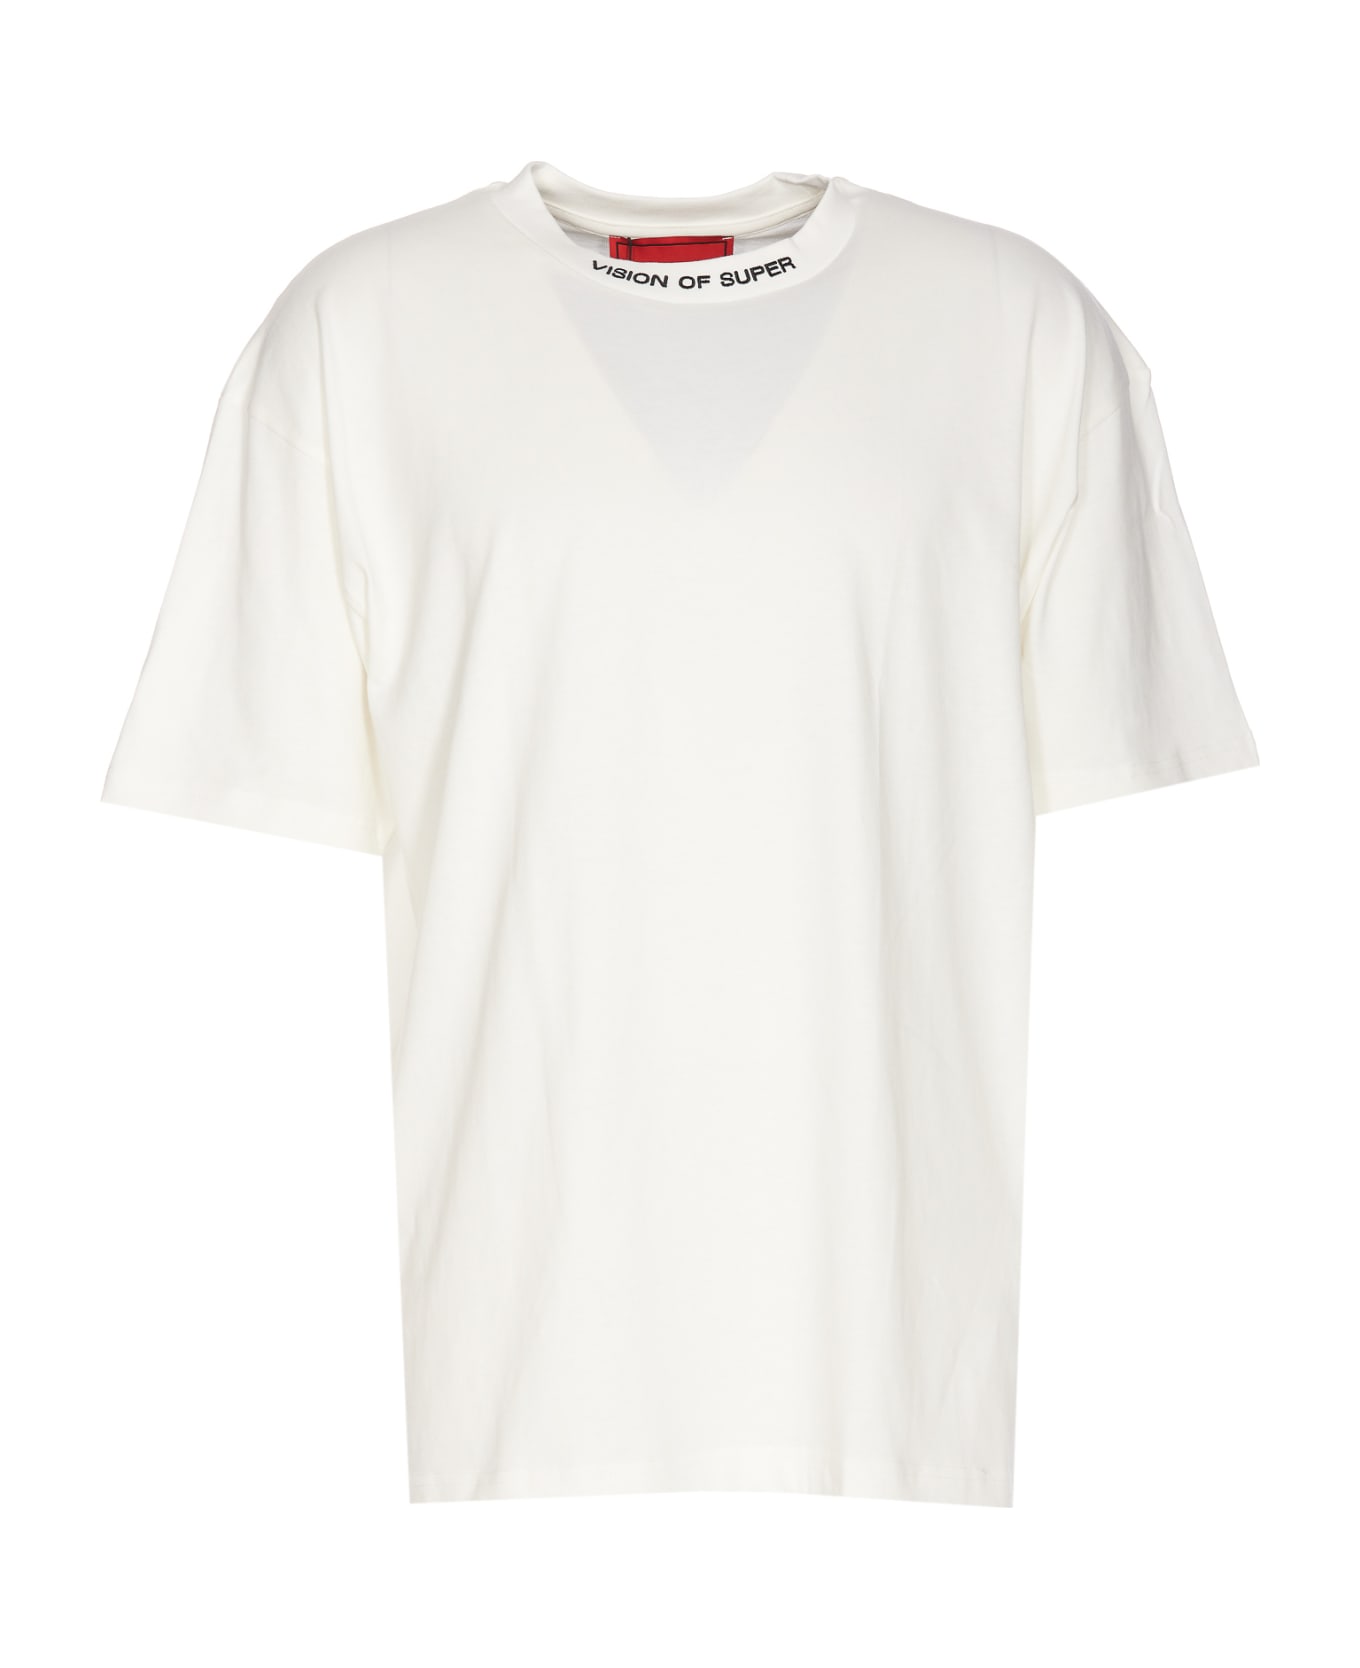 Vision of Super Logo T-shirt - White シャツ